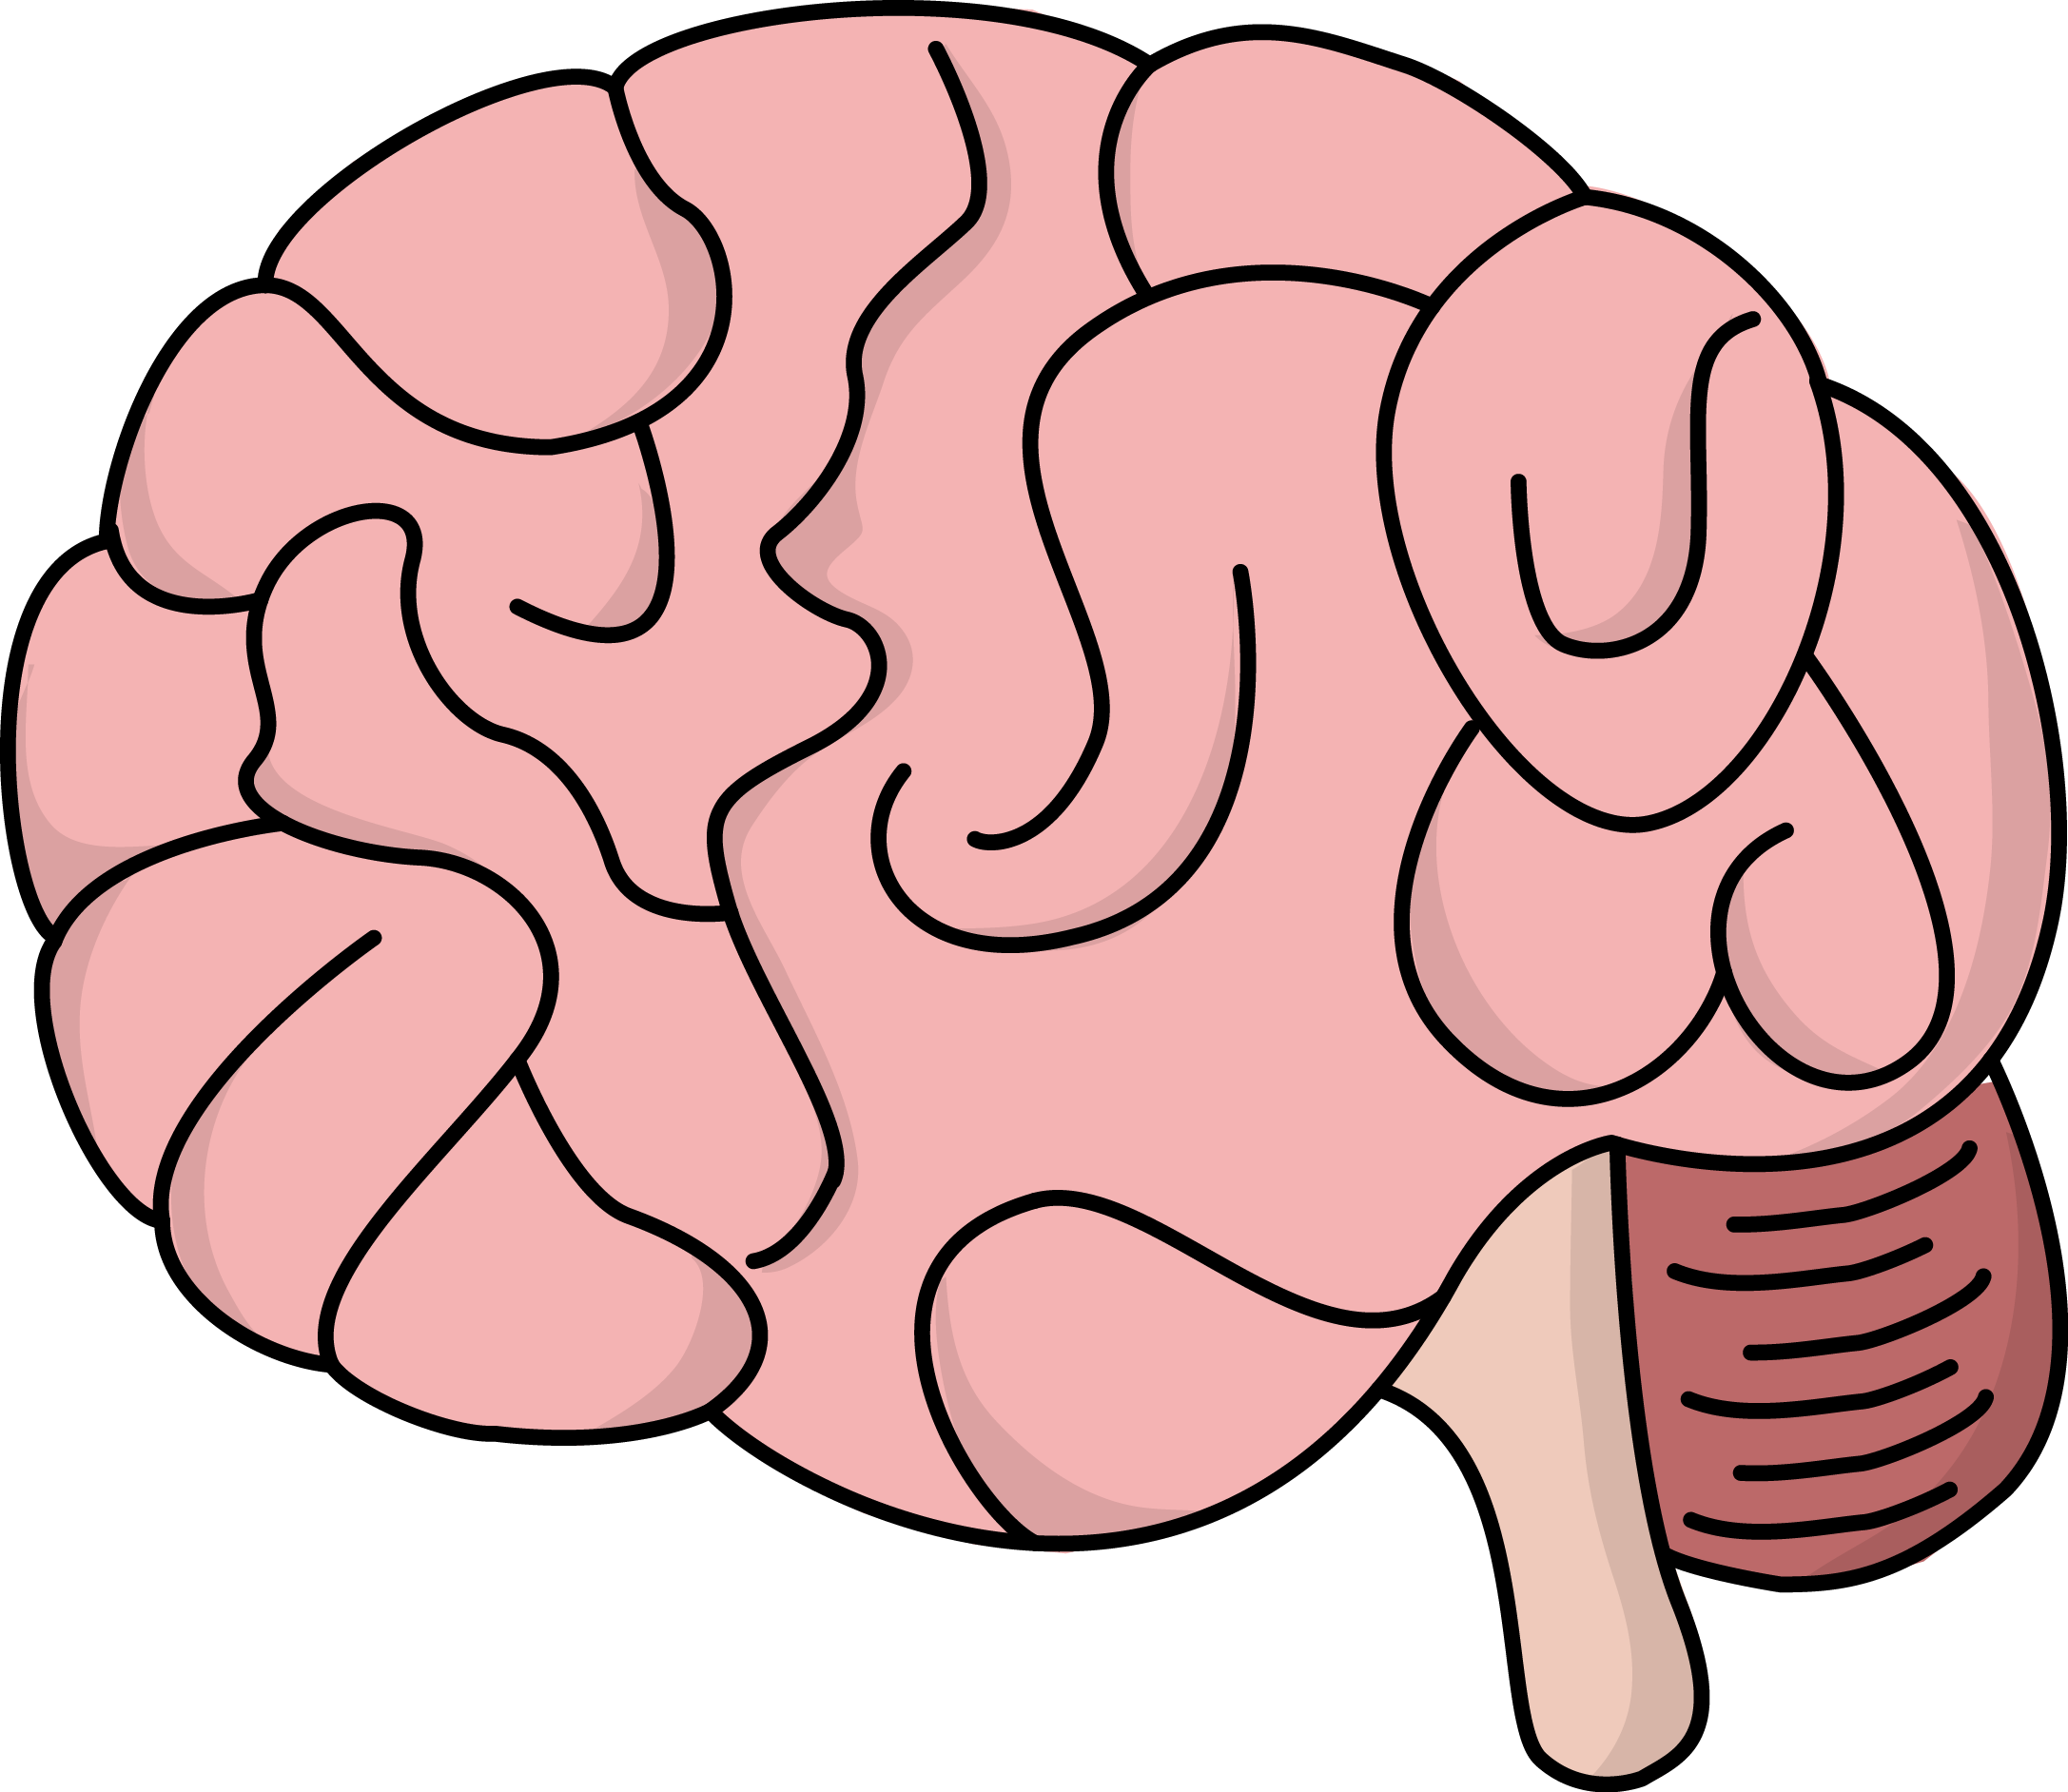 Et brain